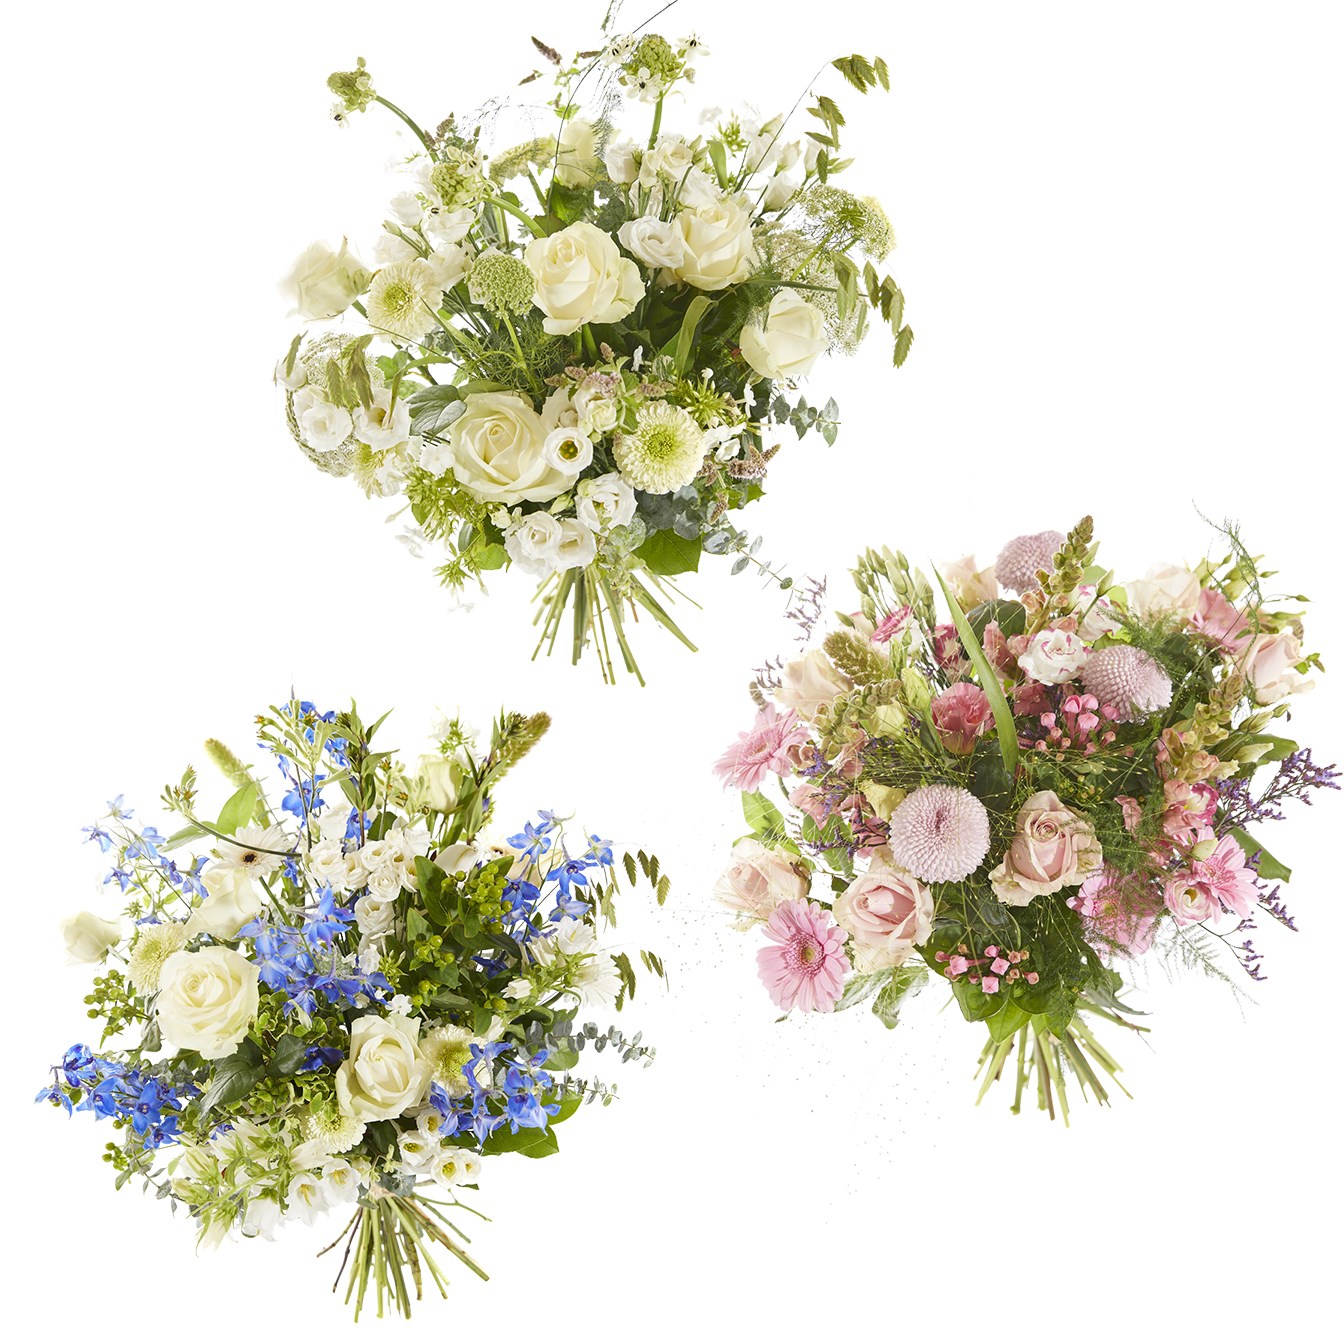 Funeral - Sympathy Bouquet